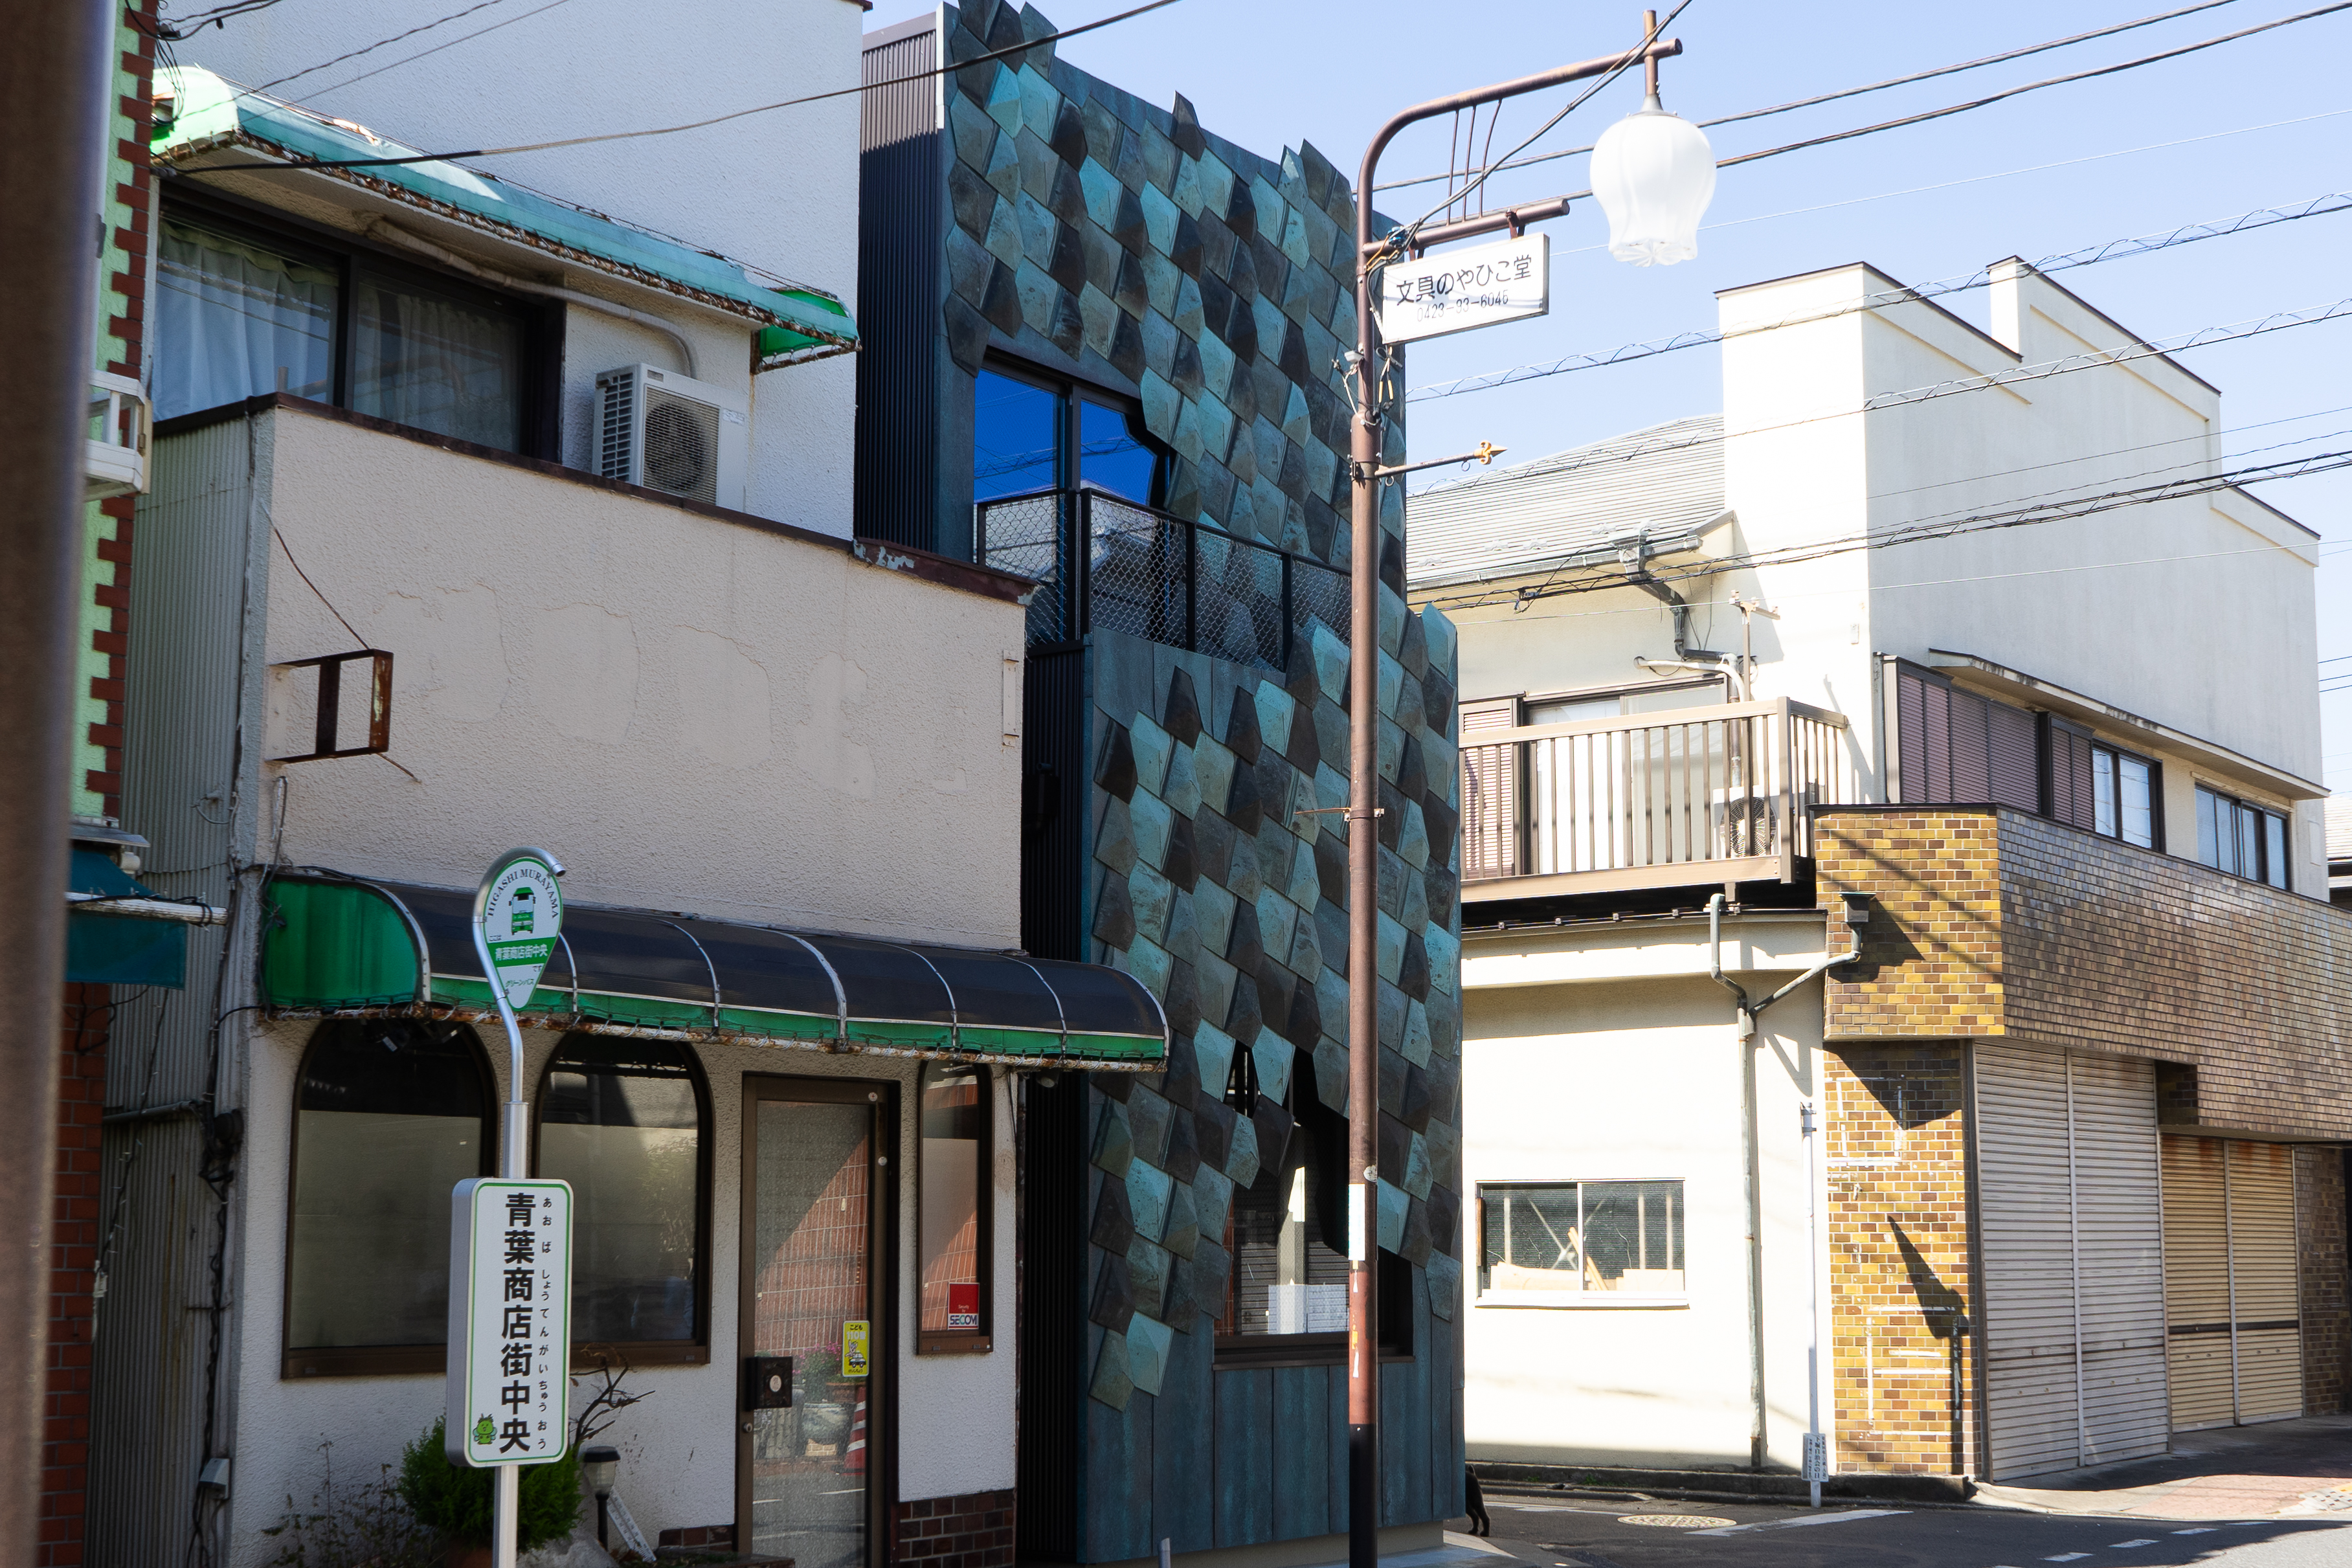 把我也對摺！東京老屋翻新結合板金工藝，隈研吾設計咖啡店「和國商店」